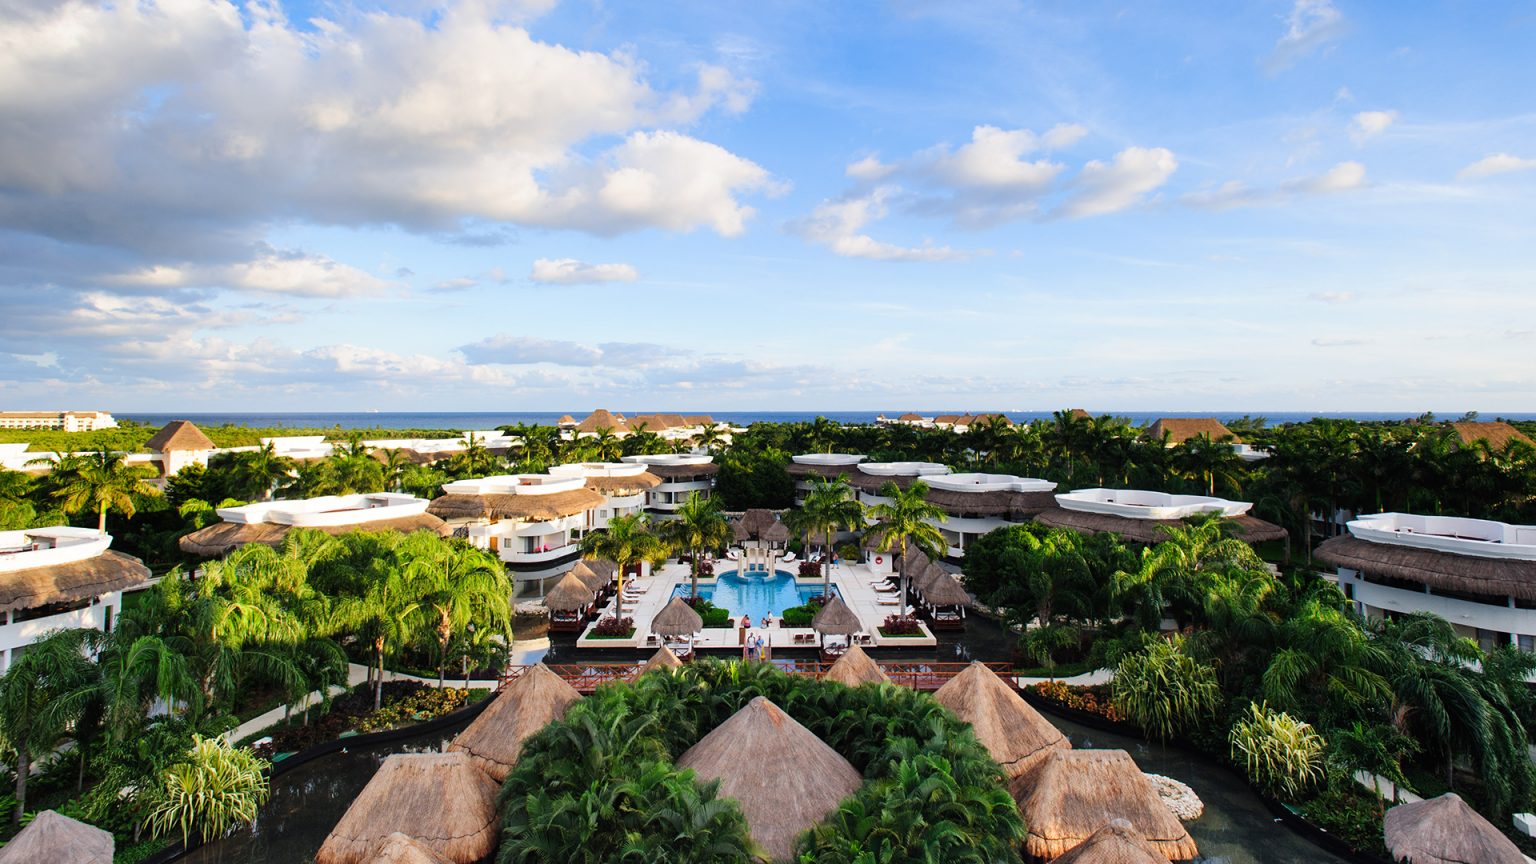 royal-holiday-hotel-resort-panorama-grand-riviera-princess-mexico-quintana-roo-riviera-maya-playa-de-carmen-1536x864